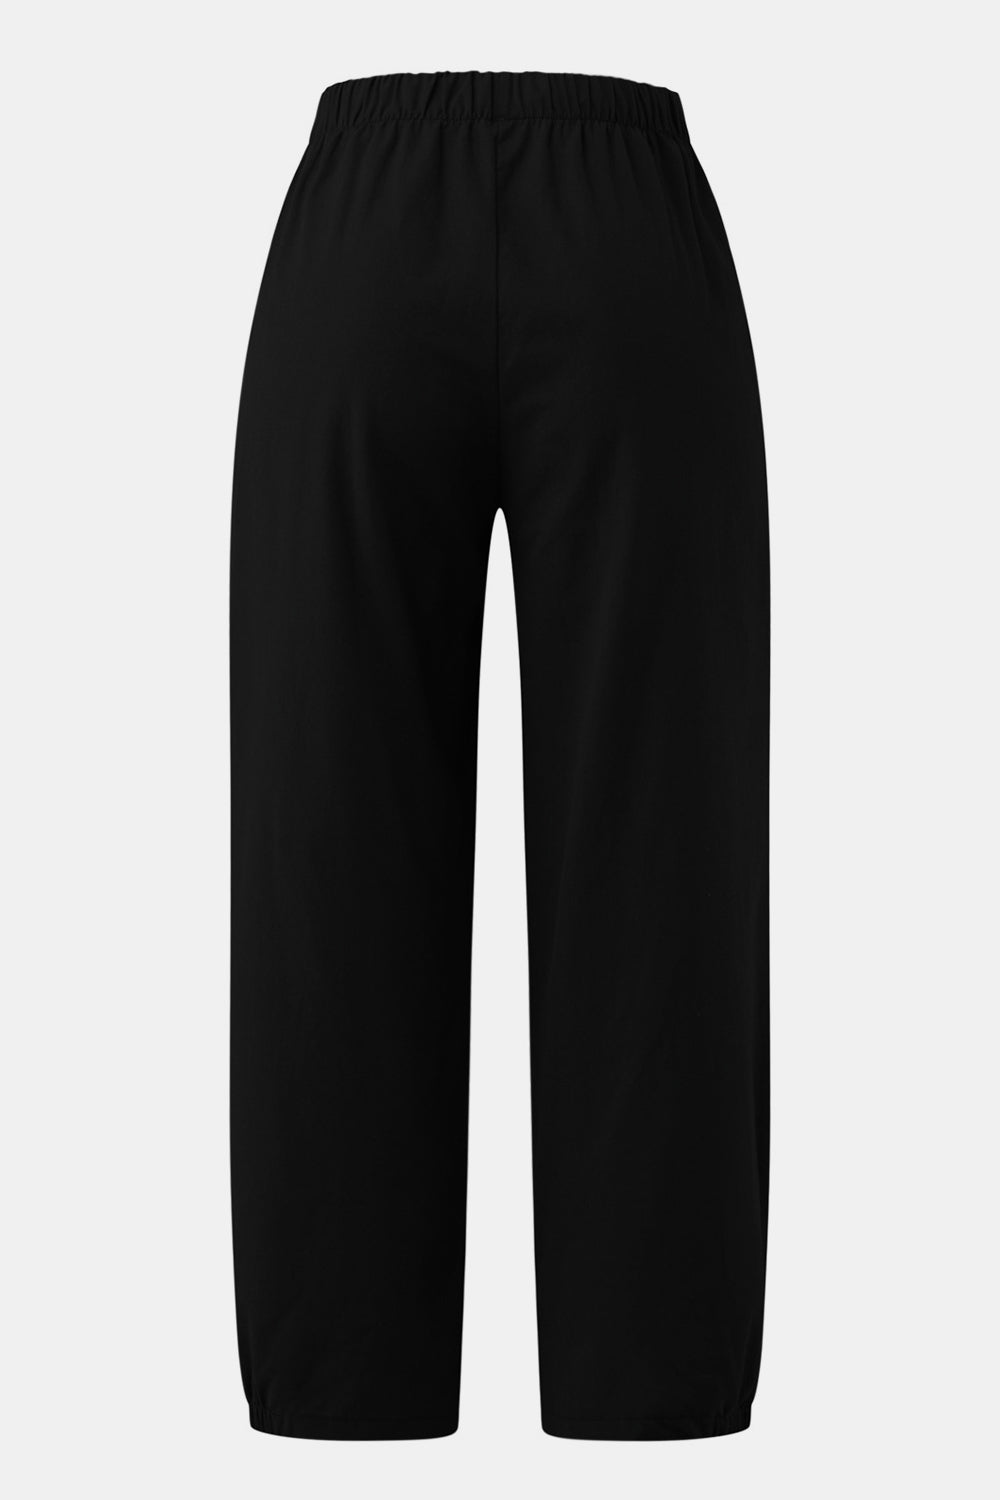 TEEK - Easy Elastic Waist Cropped Pants PANTS TEEK Trend   